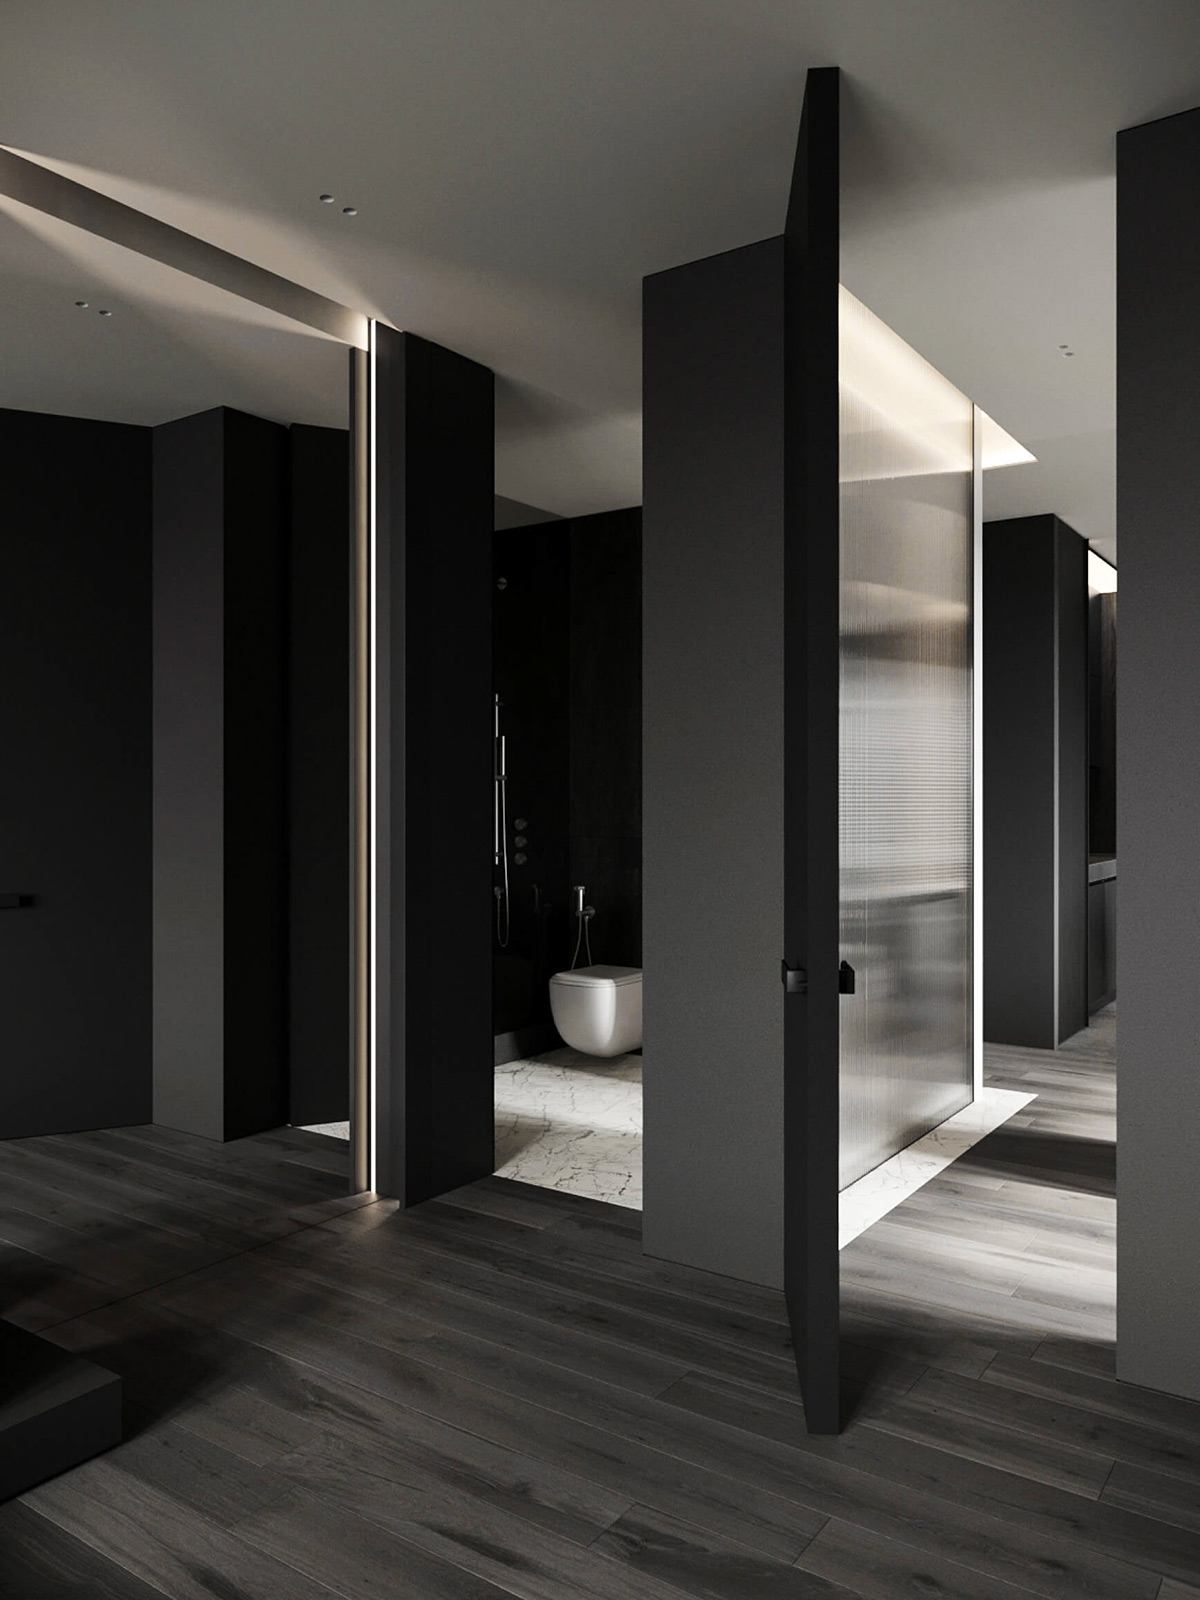 sophisticated gray scale monochromatic interior design 6